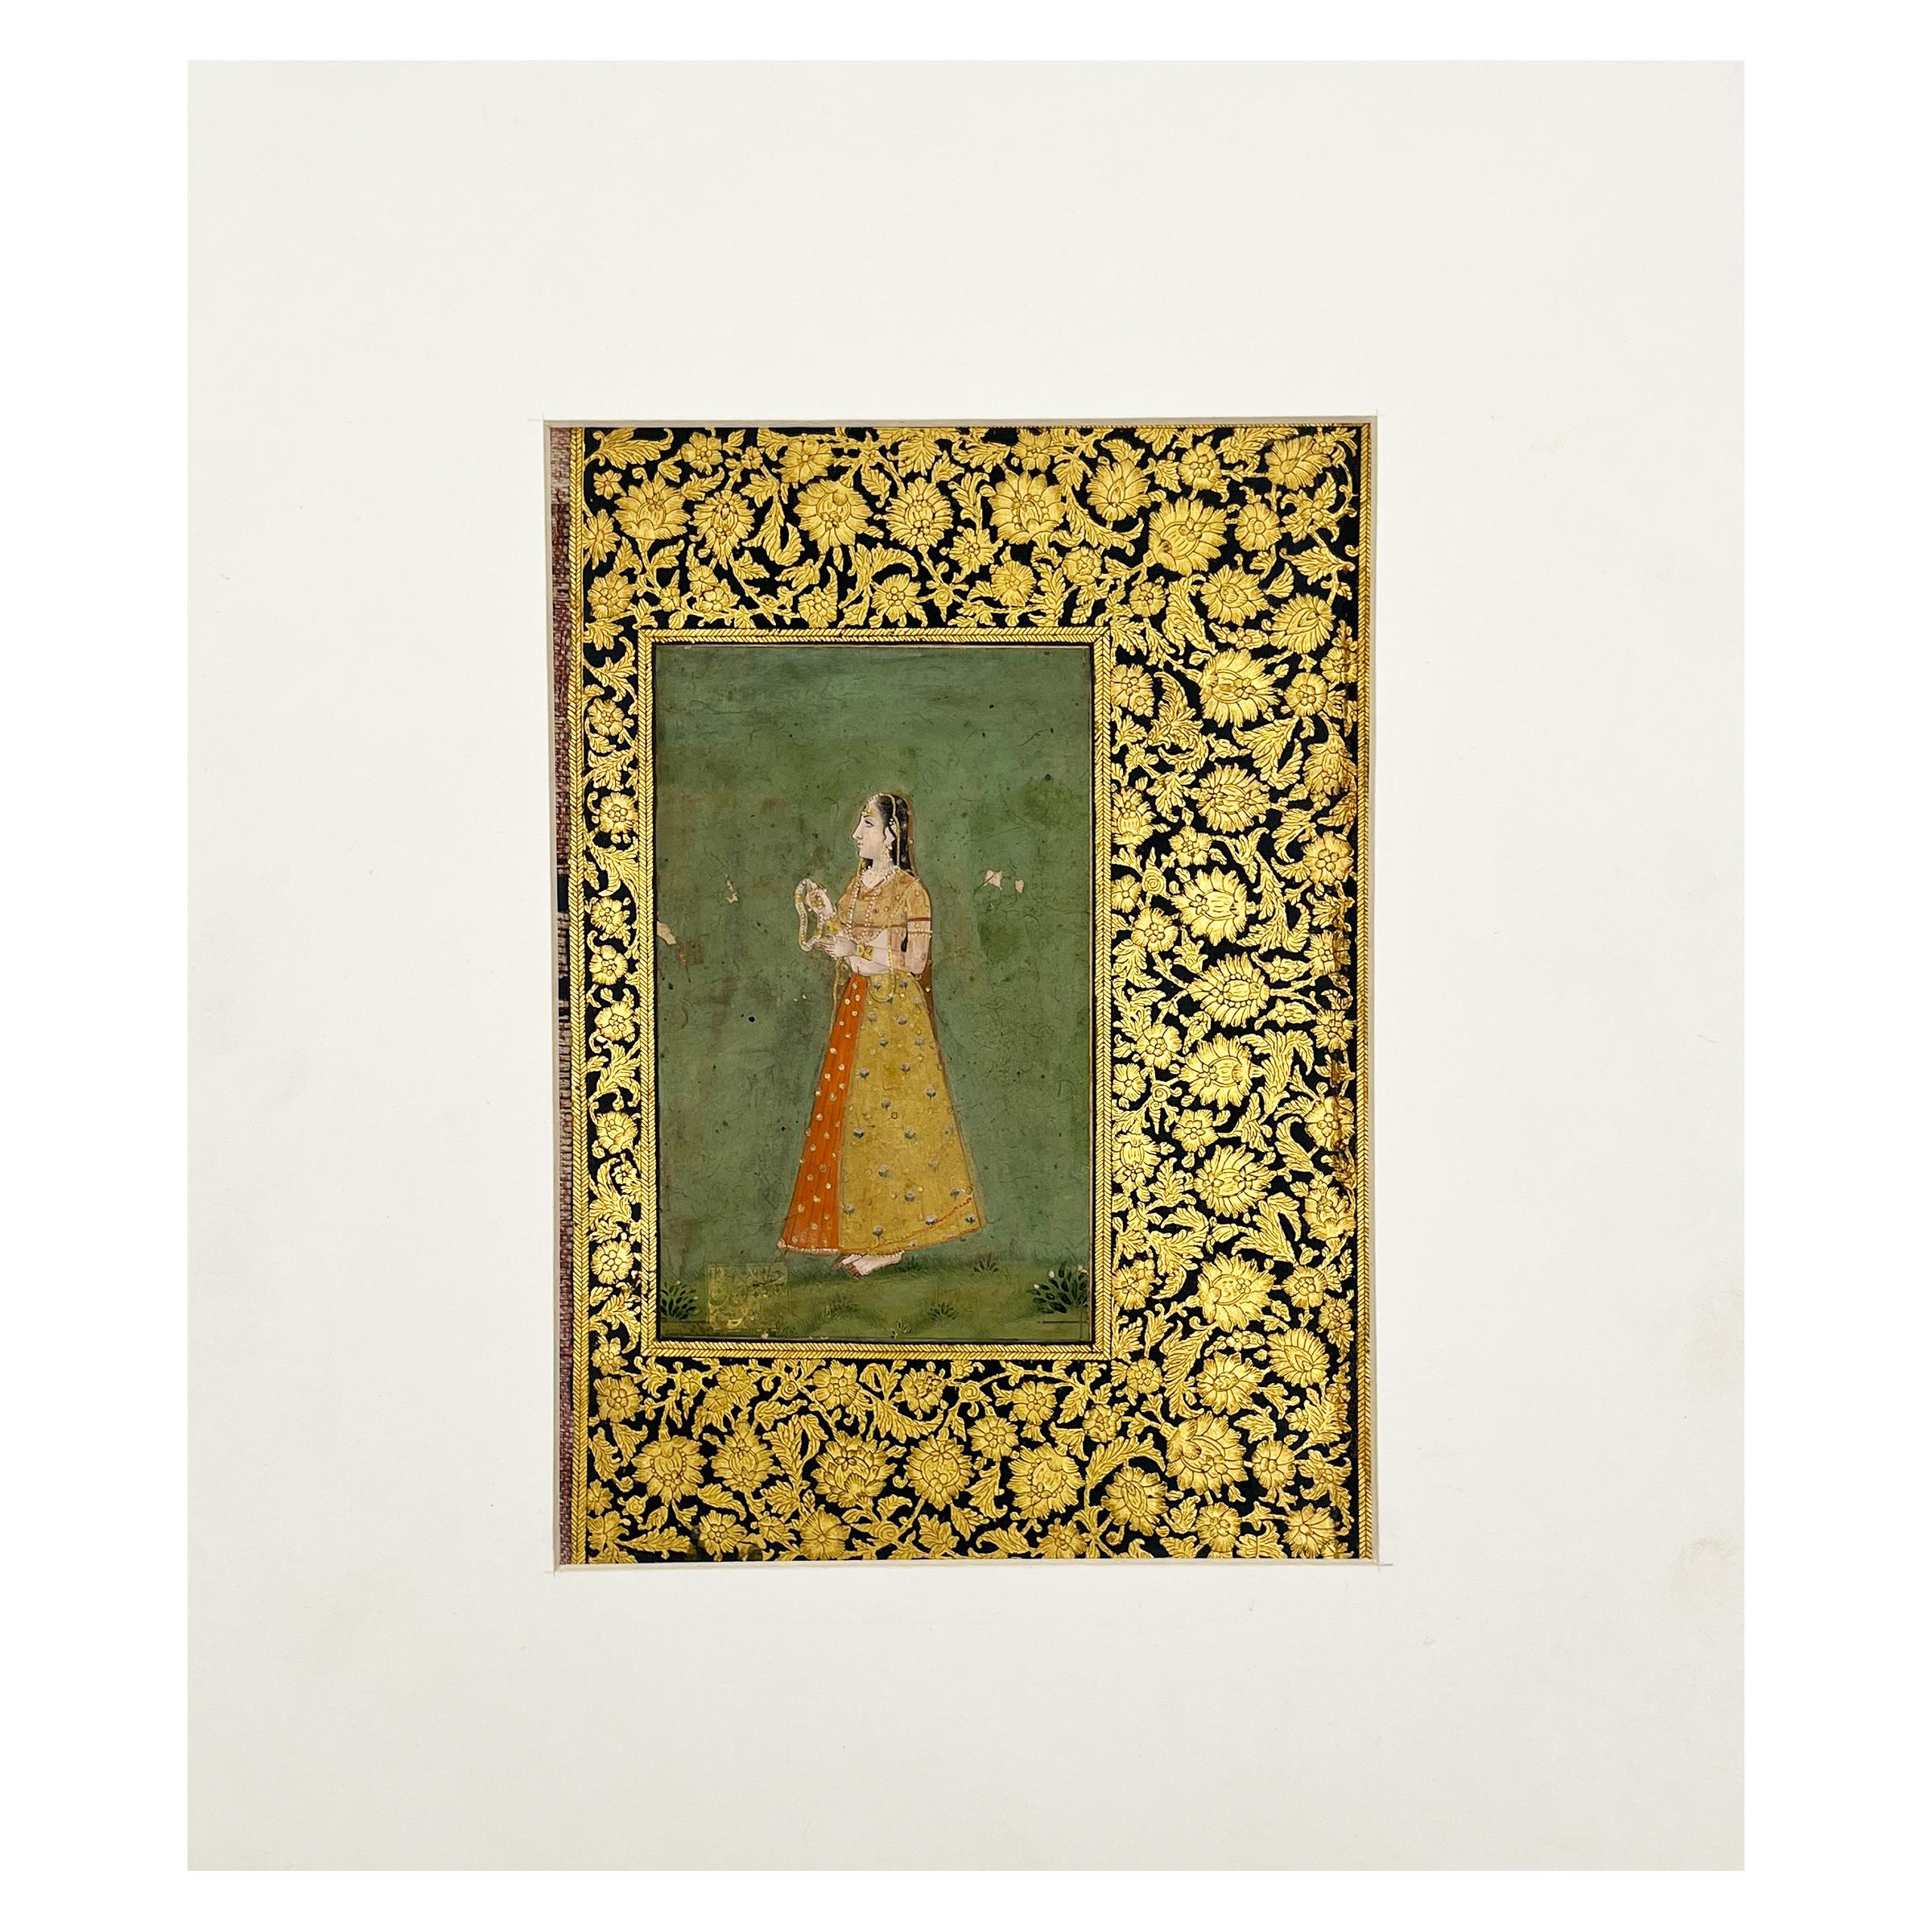 Diese indischen Miniaturgemälde zeigen einen elegant gekleideten indischen Mann und eine Dame. Die Dame ist elegant in einen traditionellen Sari gekleidet und mit aufwändigem Schmuck geschmückt, der Mann trägt traditionelle Kleidung und einen